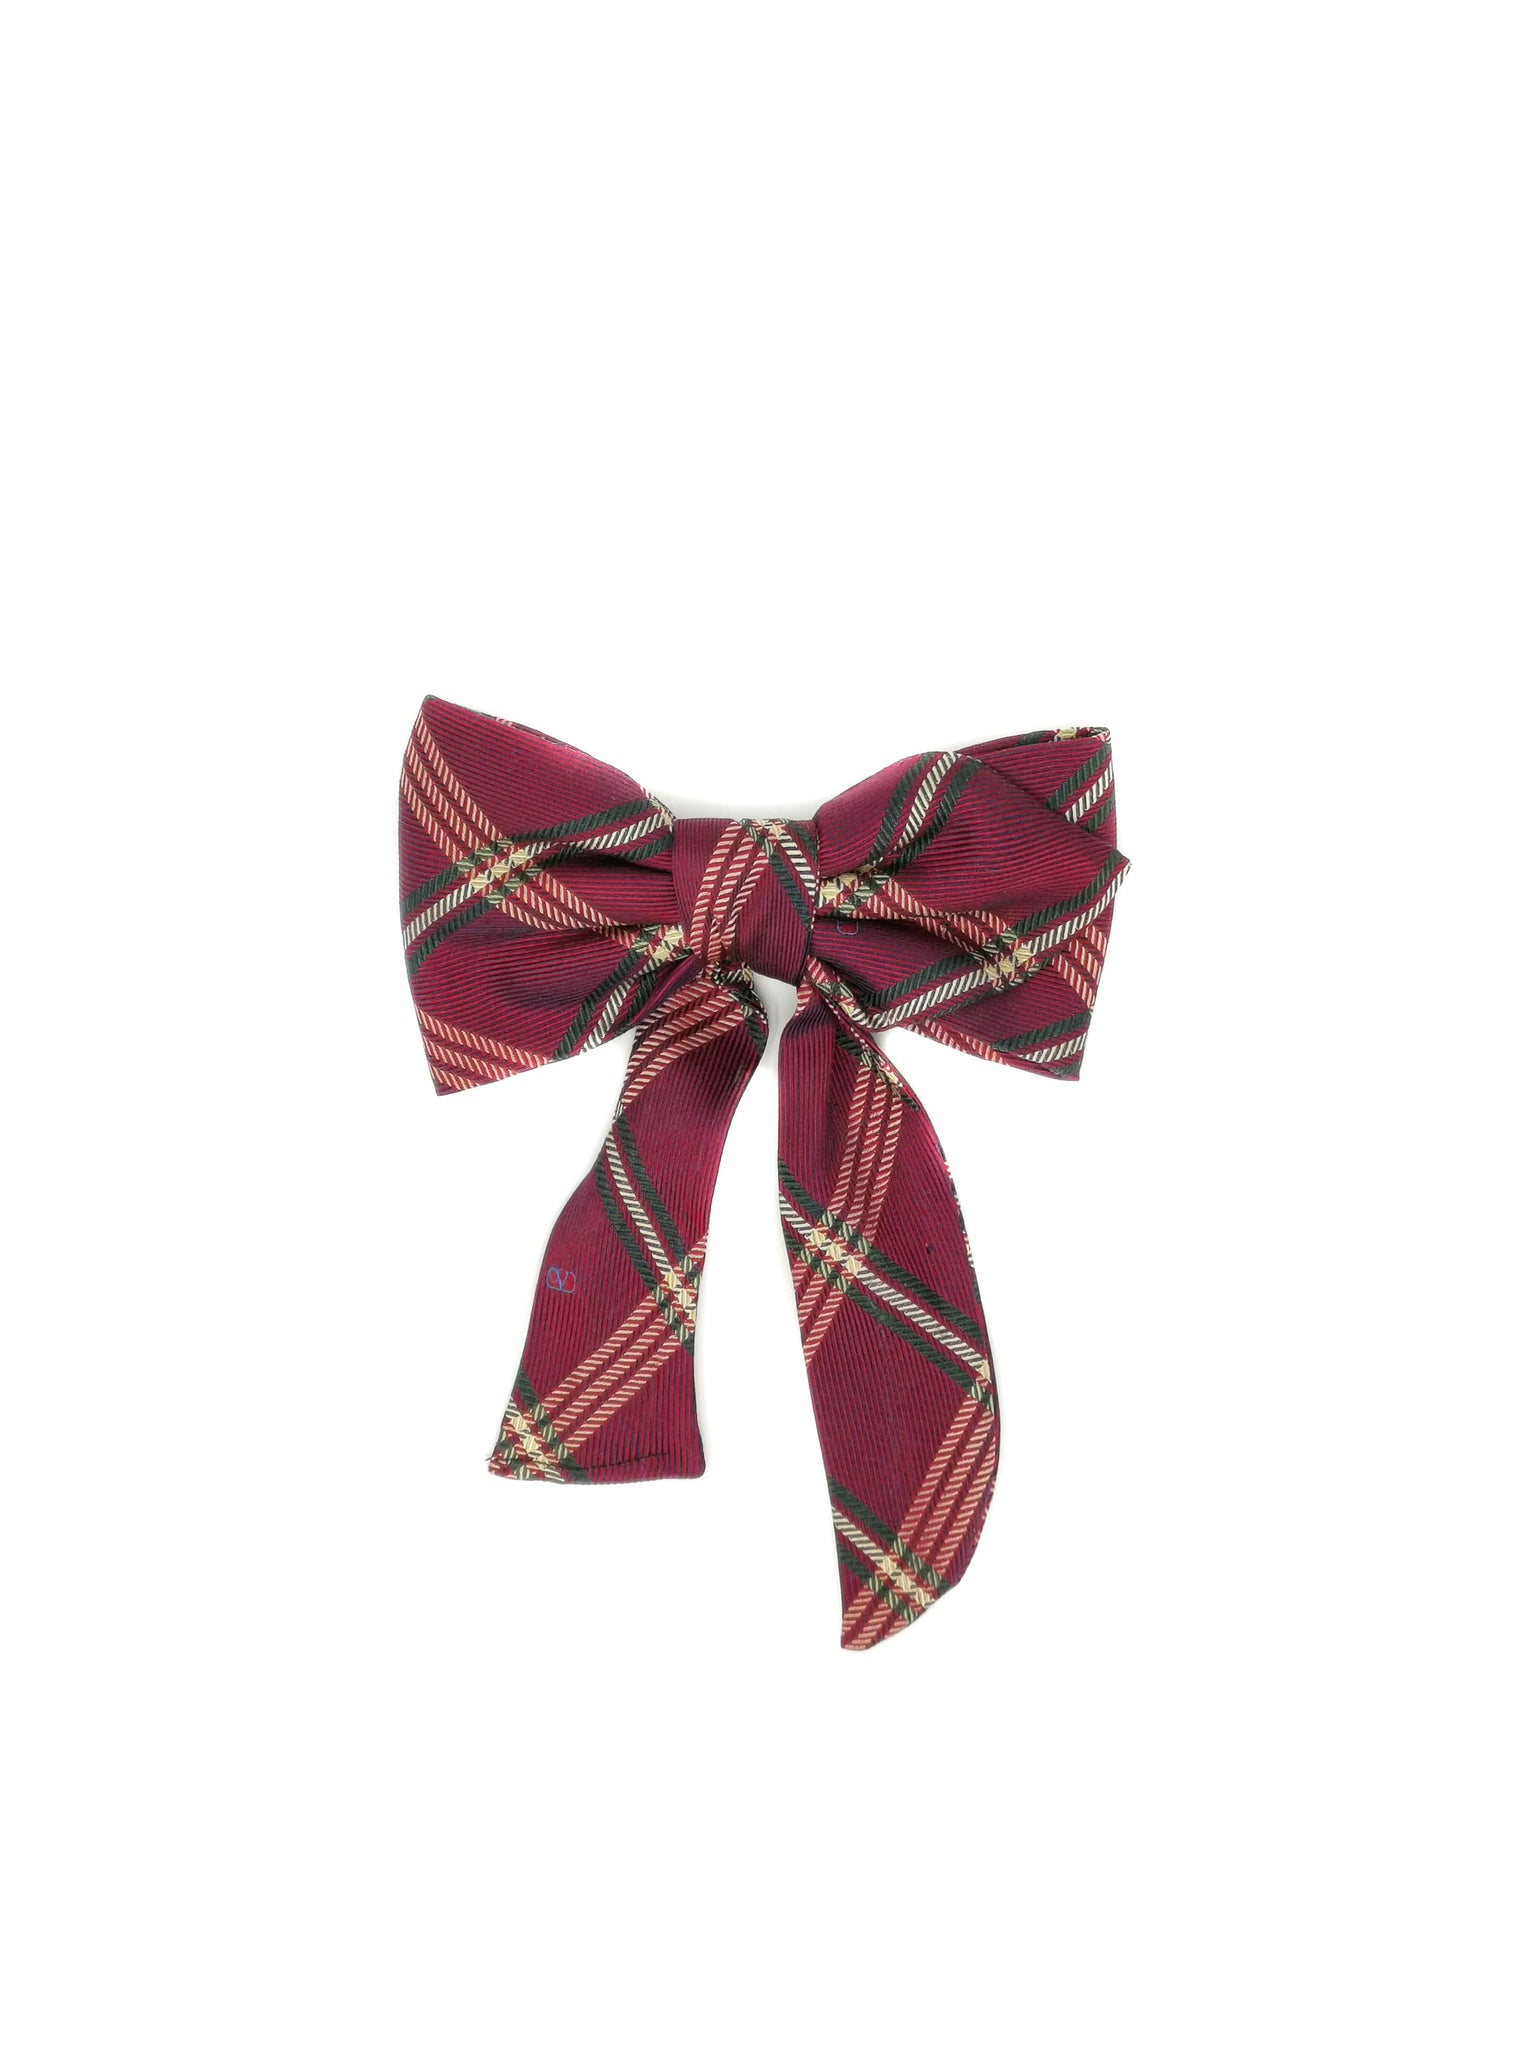 Barrette con fiocco in seta scozzese bordeaux realizzata con cravatta vintage